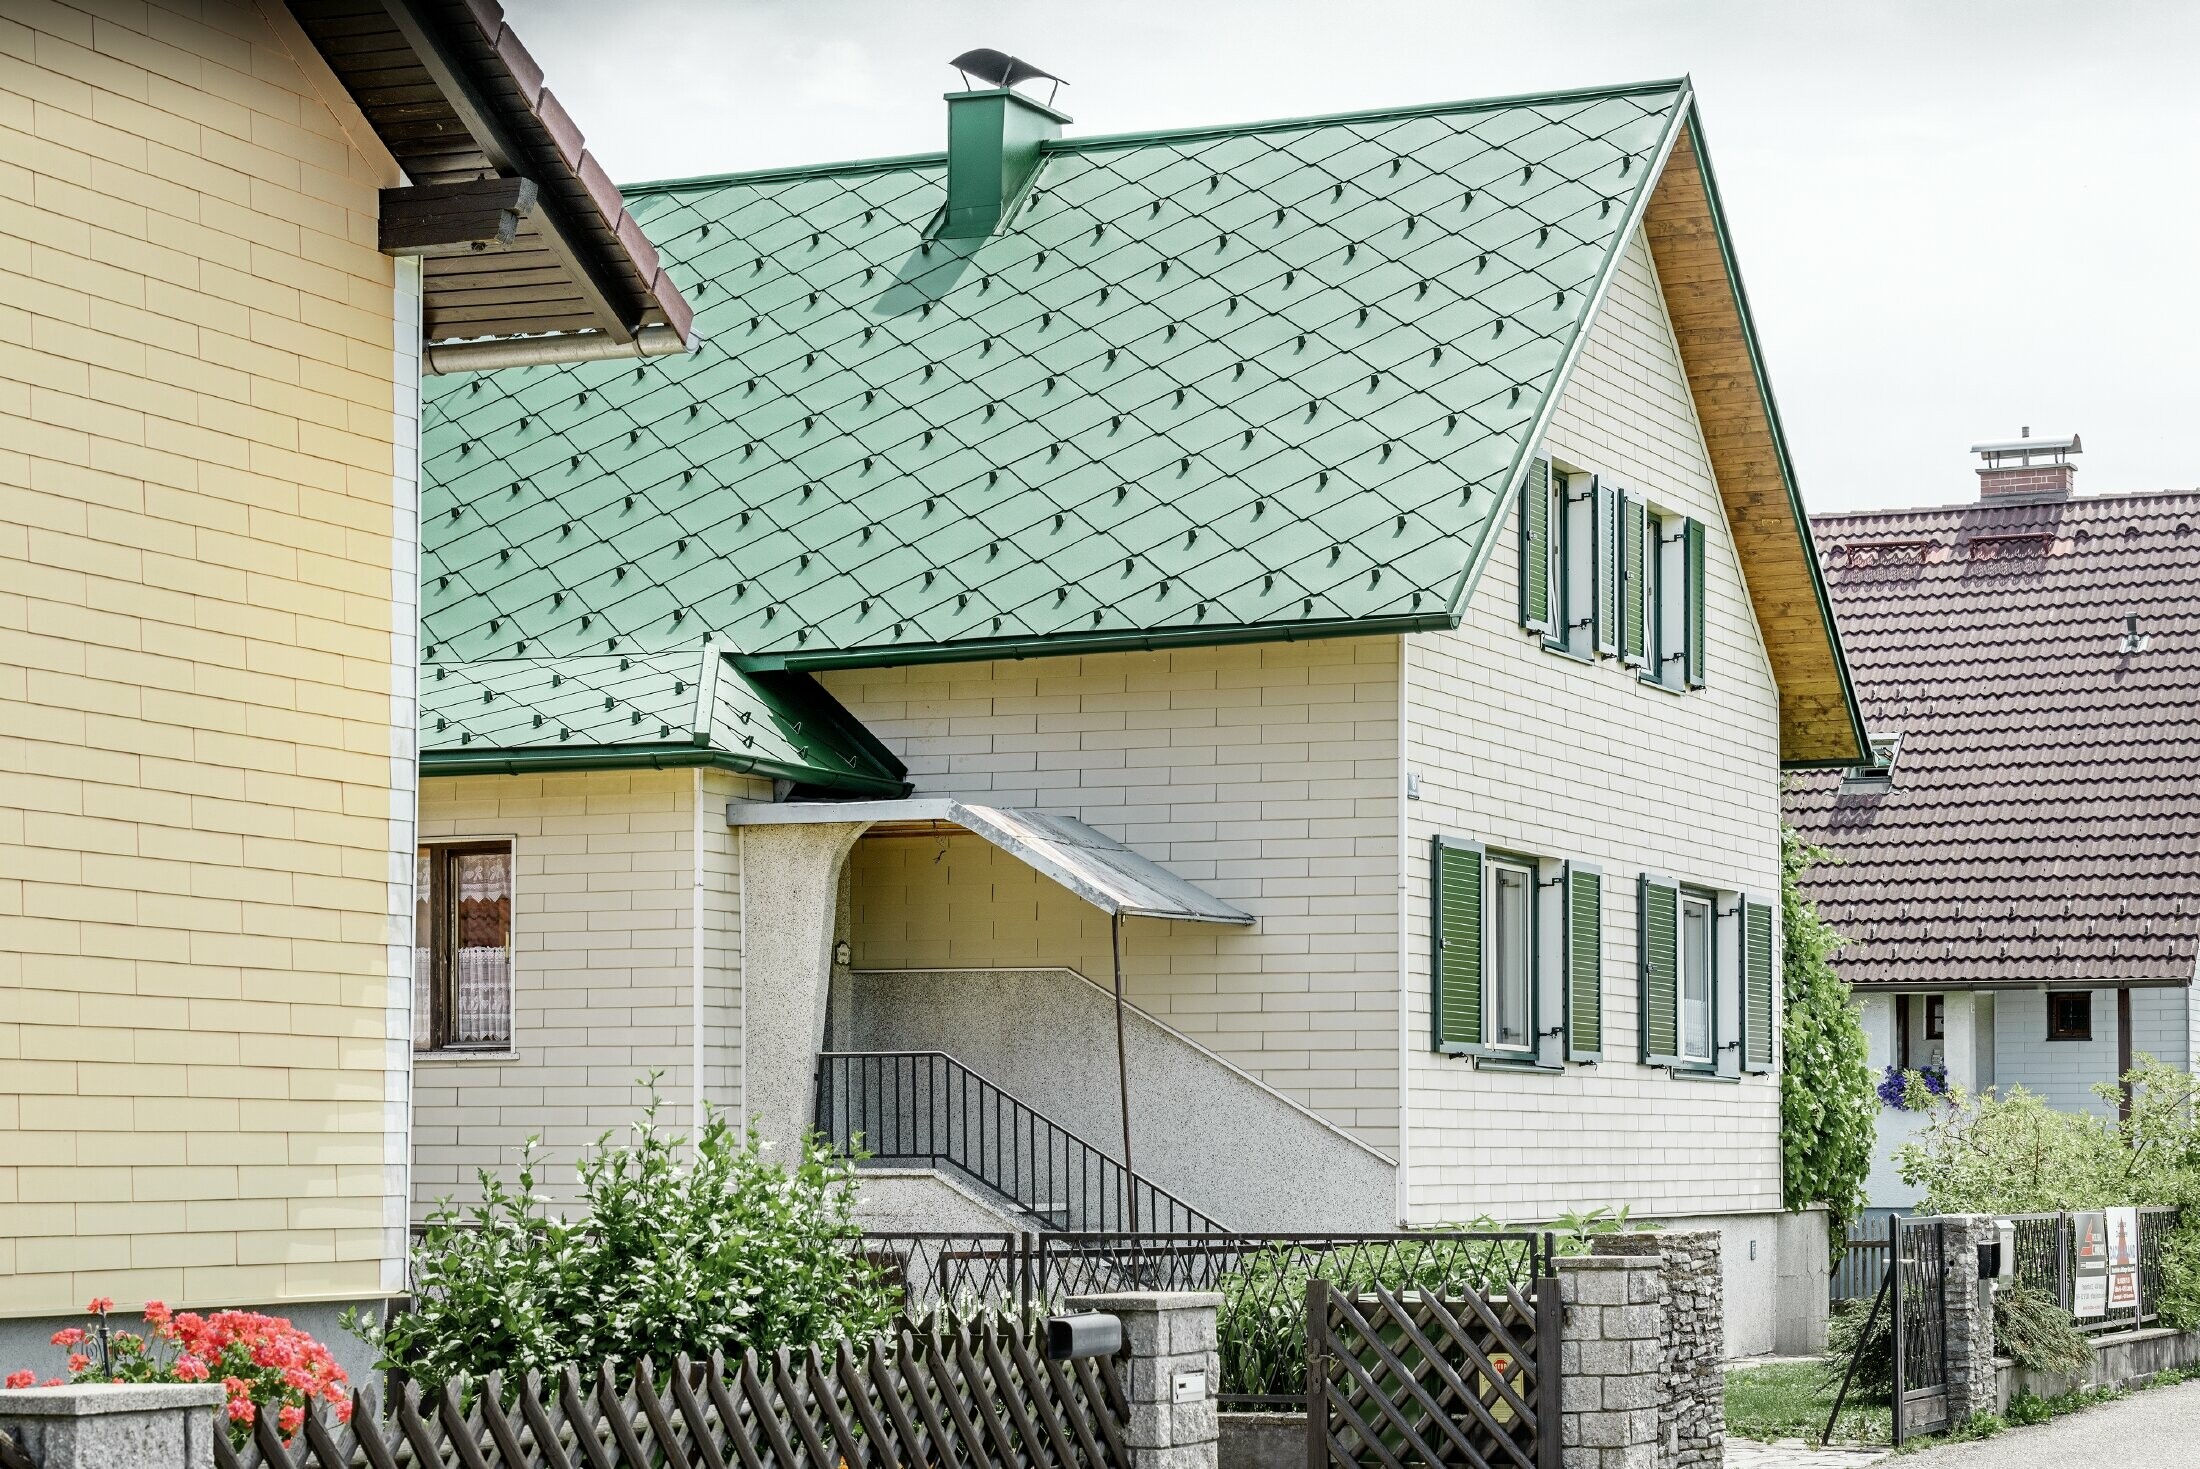 Casa unifamiliare classica con tetto a doppia falda con una copertura in alluminio in verde muschio con scuri verdi.